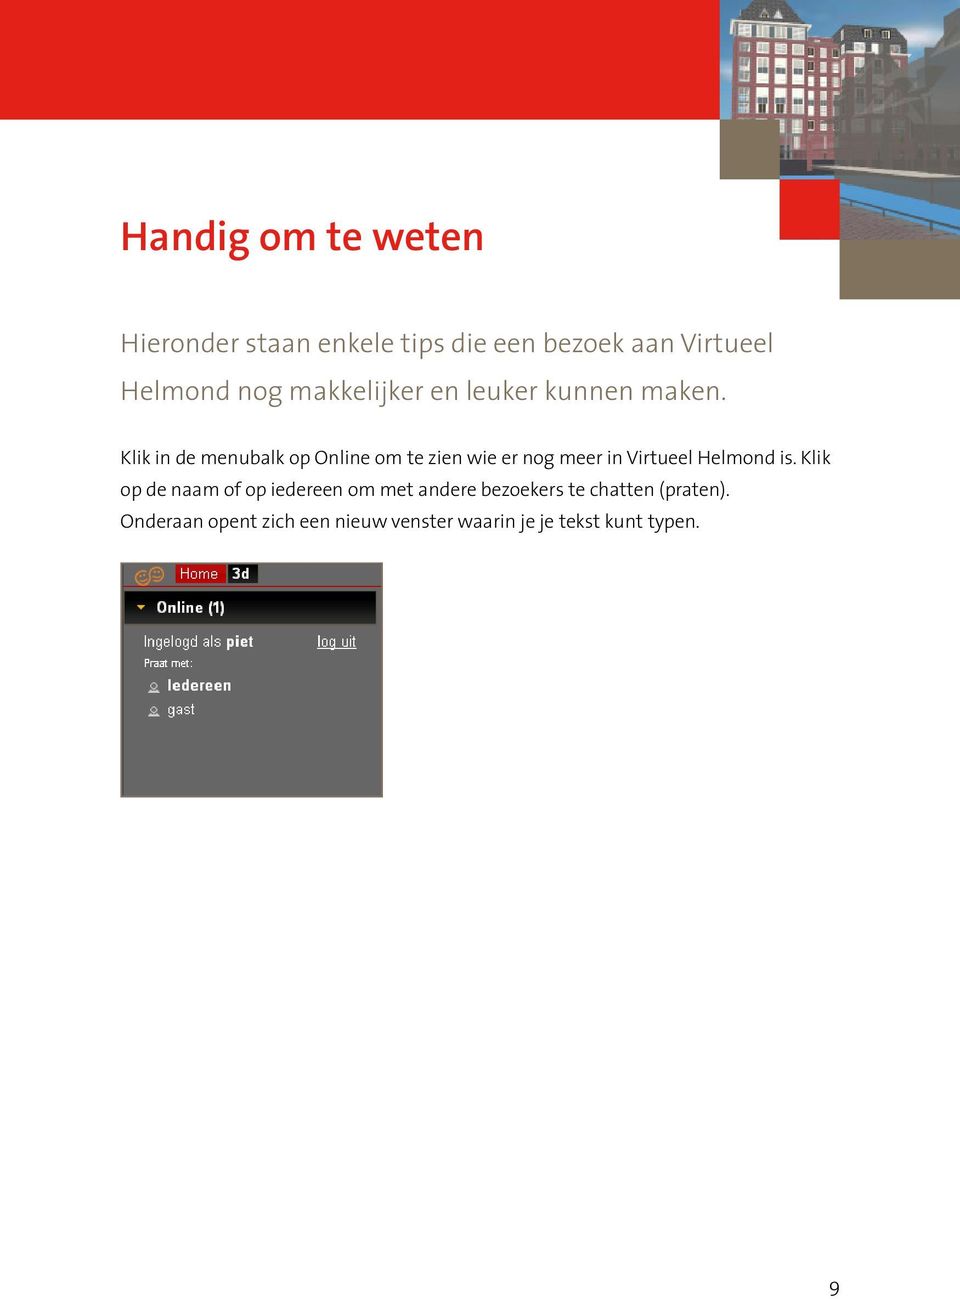 Klik in de menubalk op Online om te zien wie er nog meer in Virtueel Helmond is.